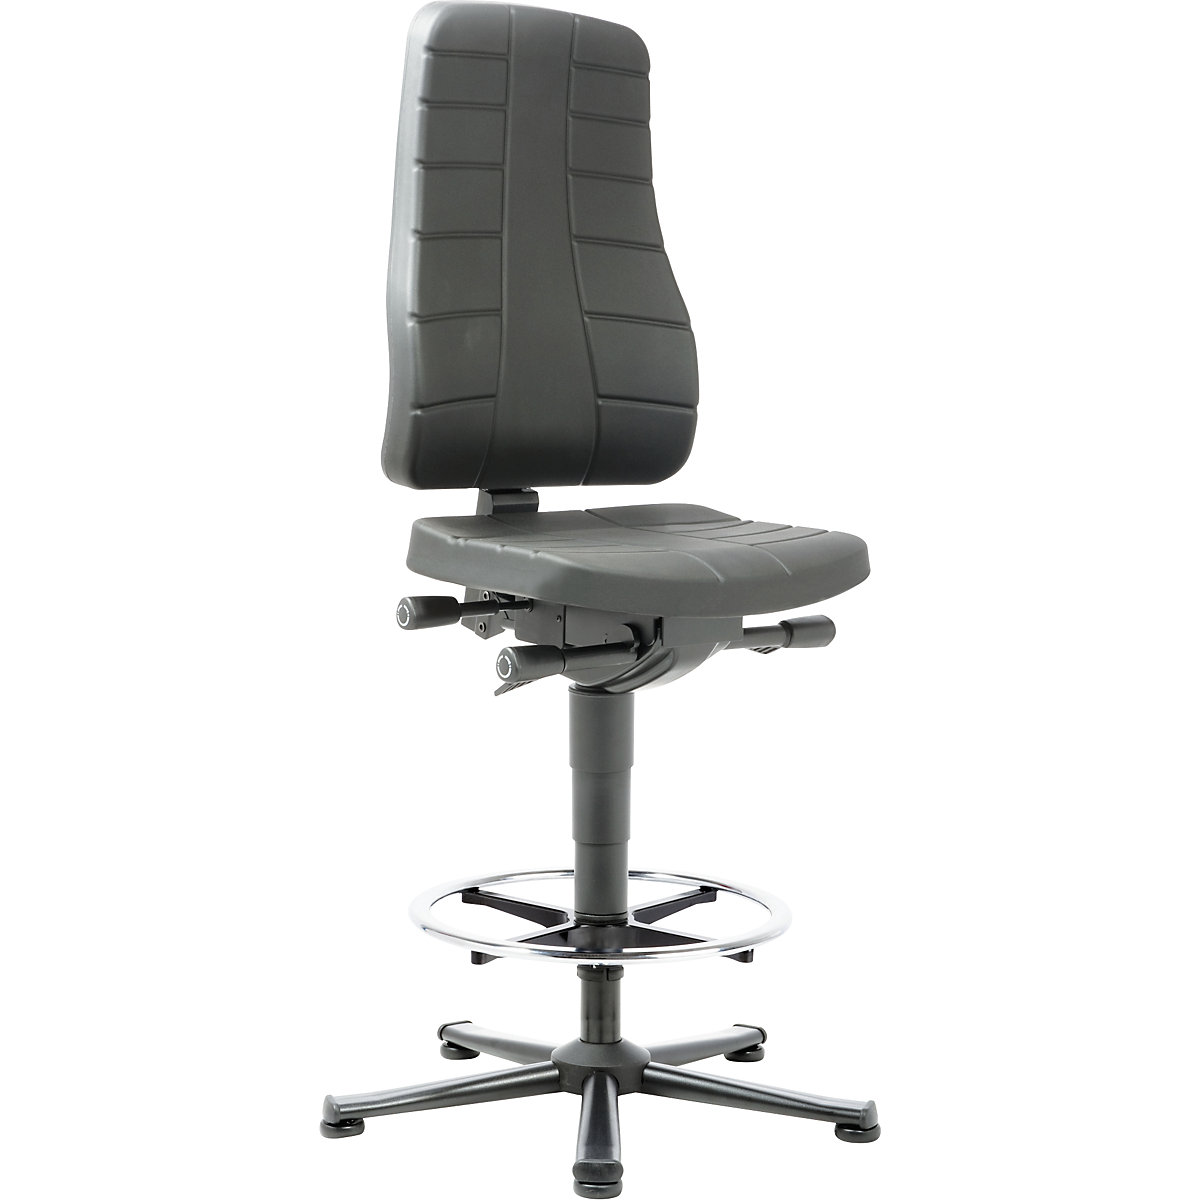 Pracovní otočná židle All-in-One - bimos